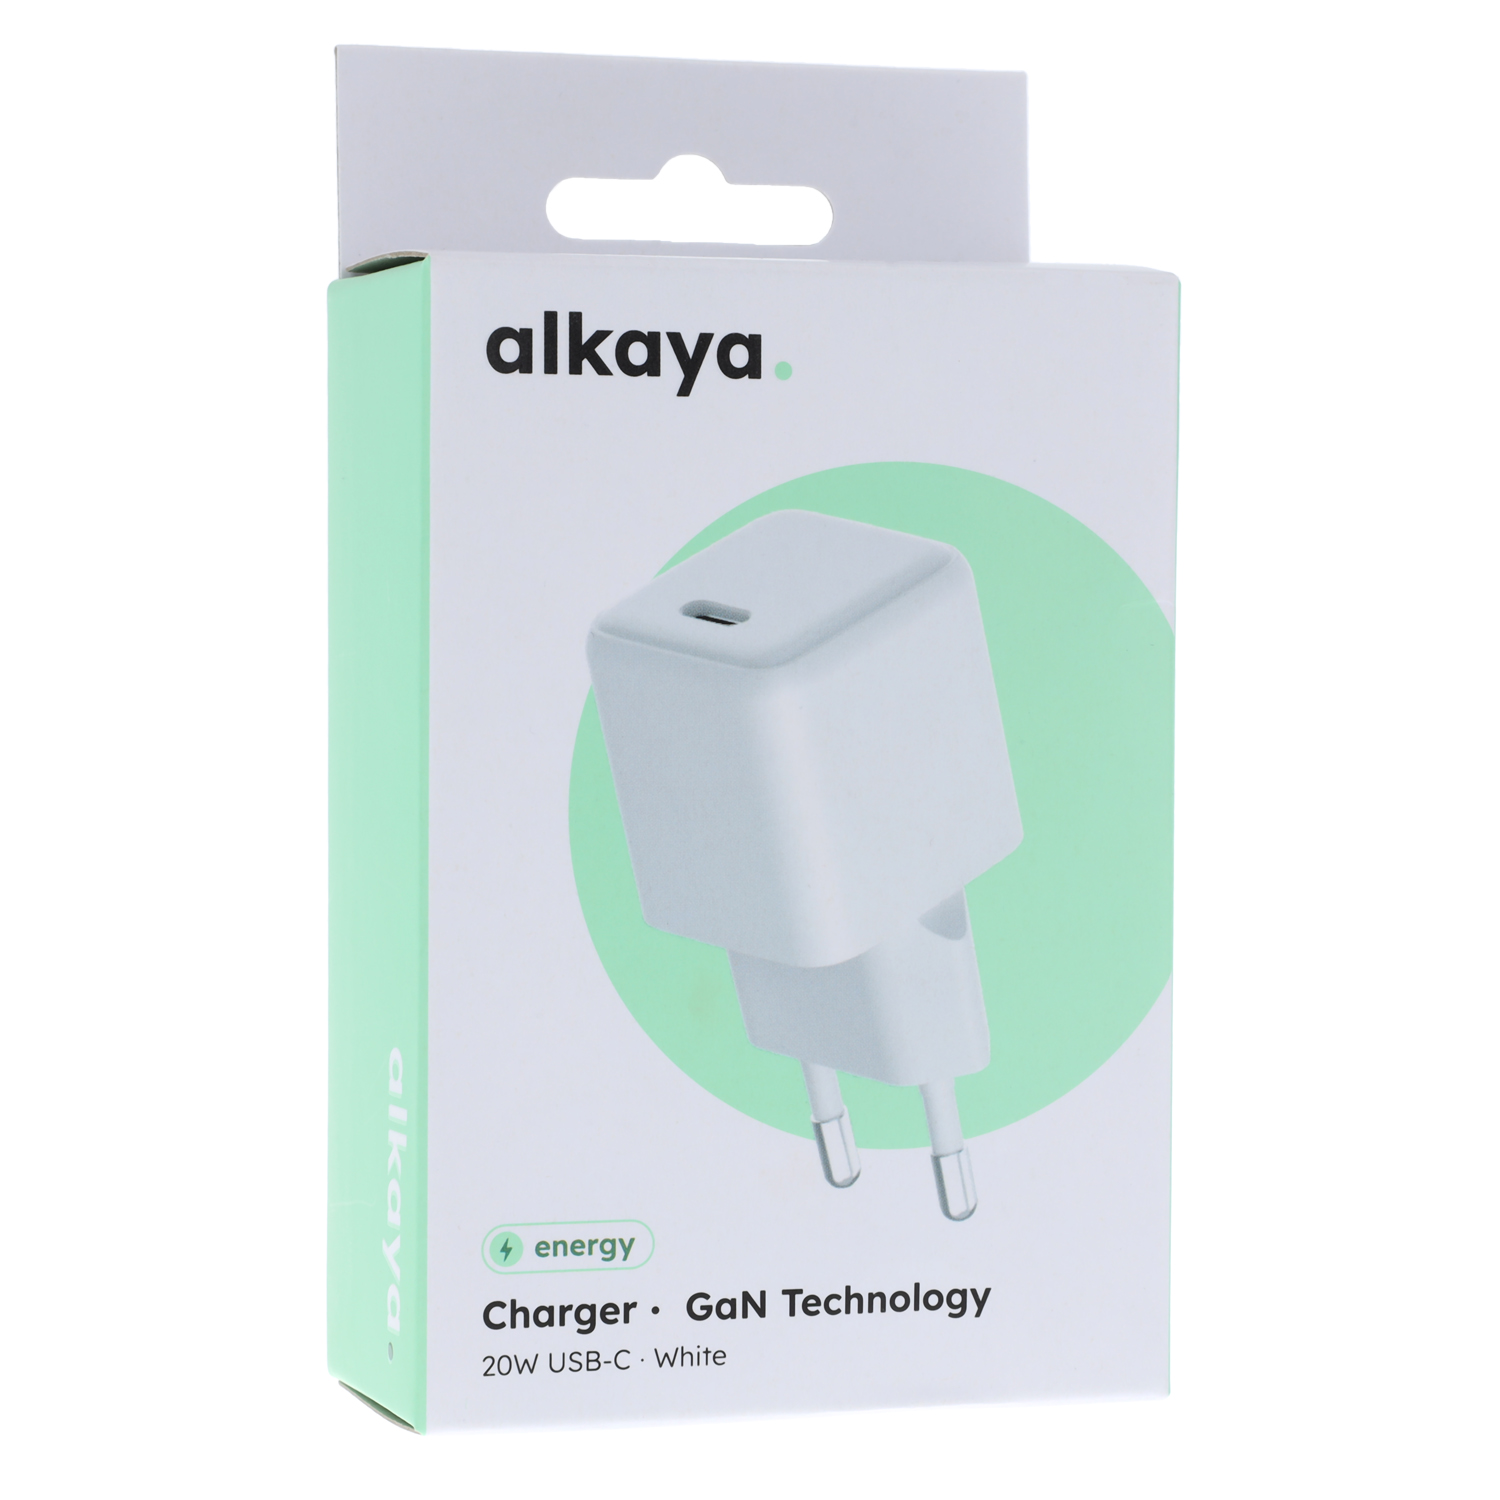 alkaya. | NEXUS-Ladegeräte mit GaN-Technologie 20W USB-C Universal compatibility, White